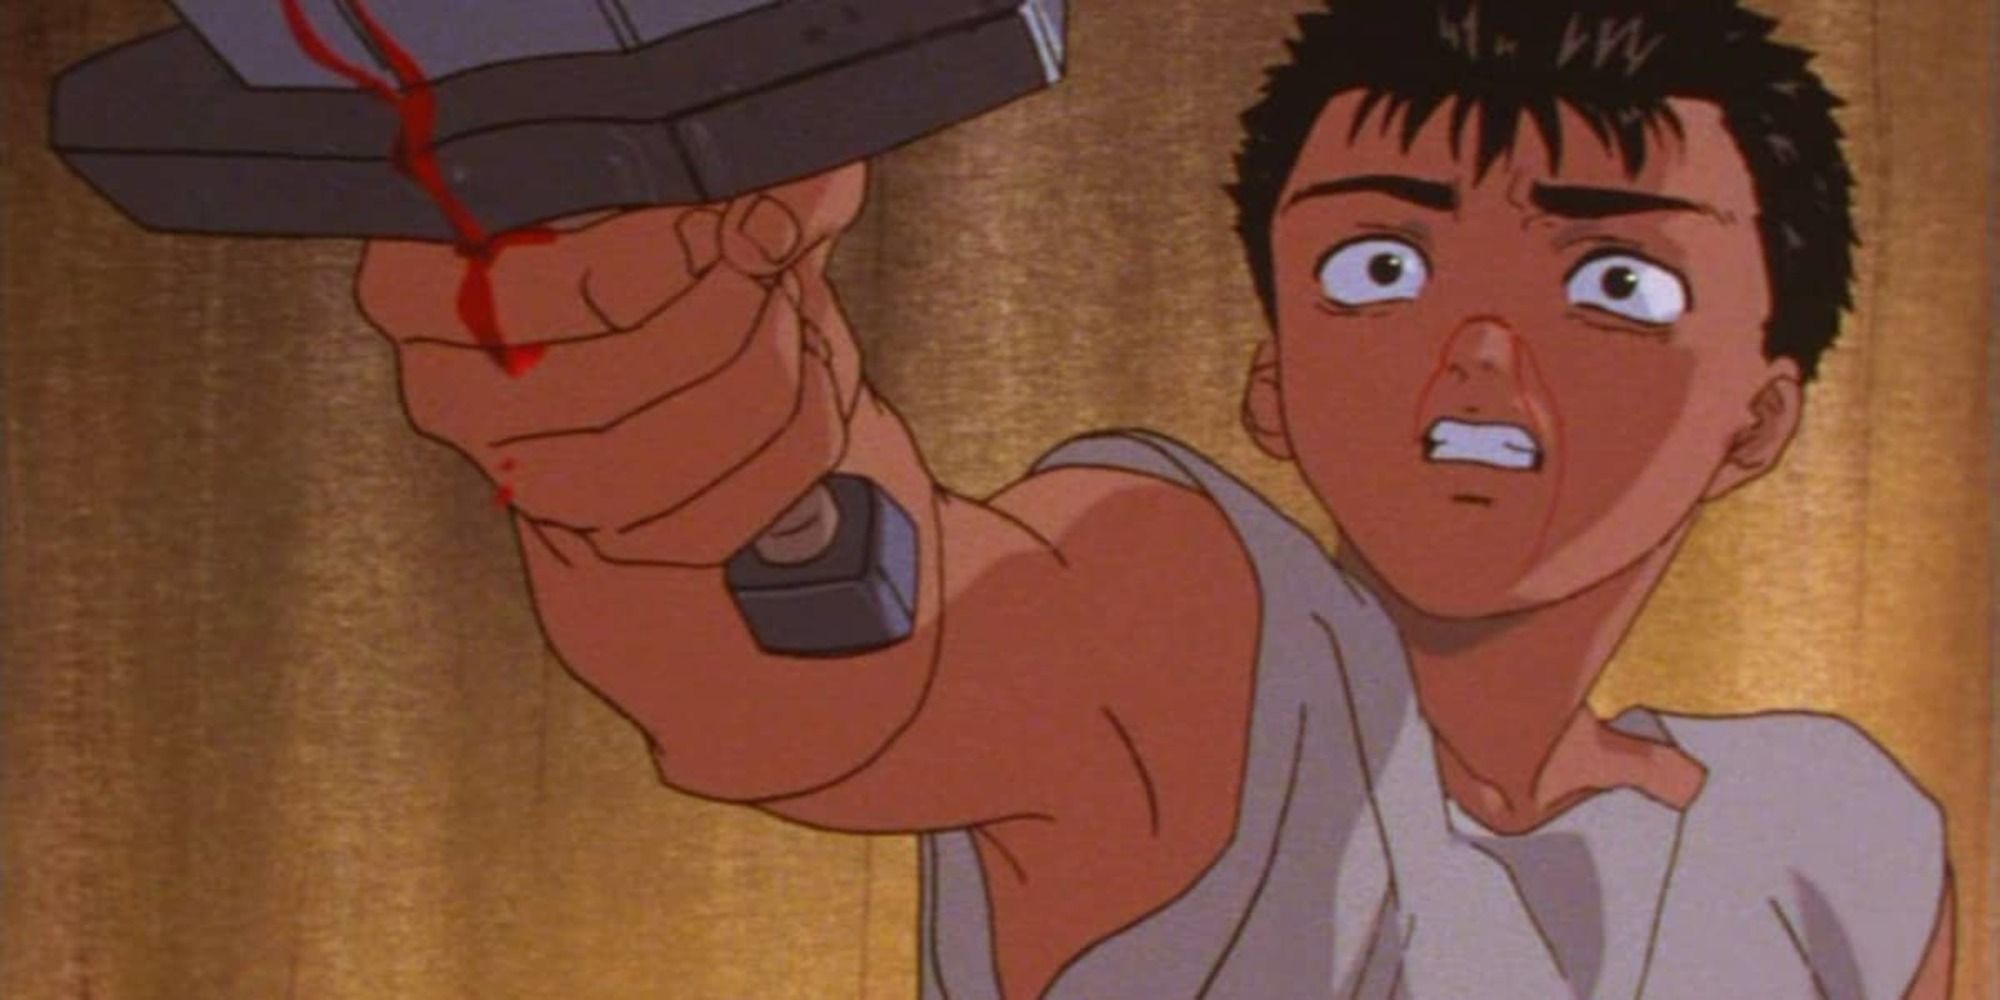 guts kills gambino-berserk screenshot from the anime